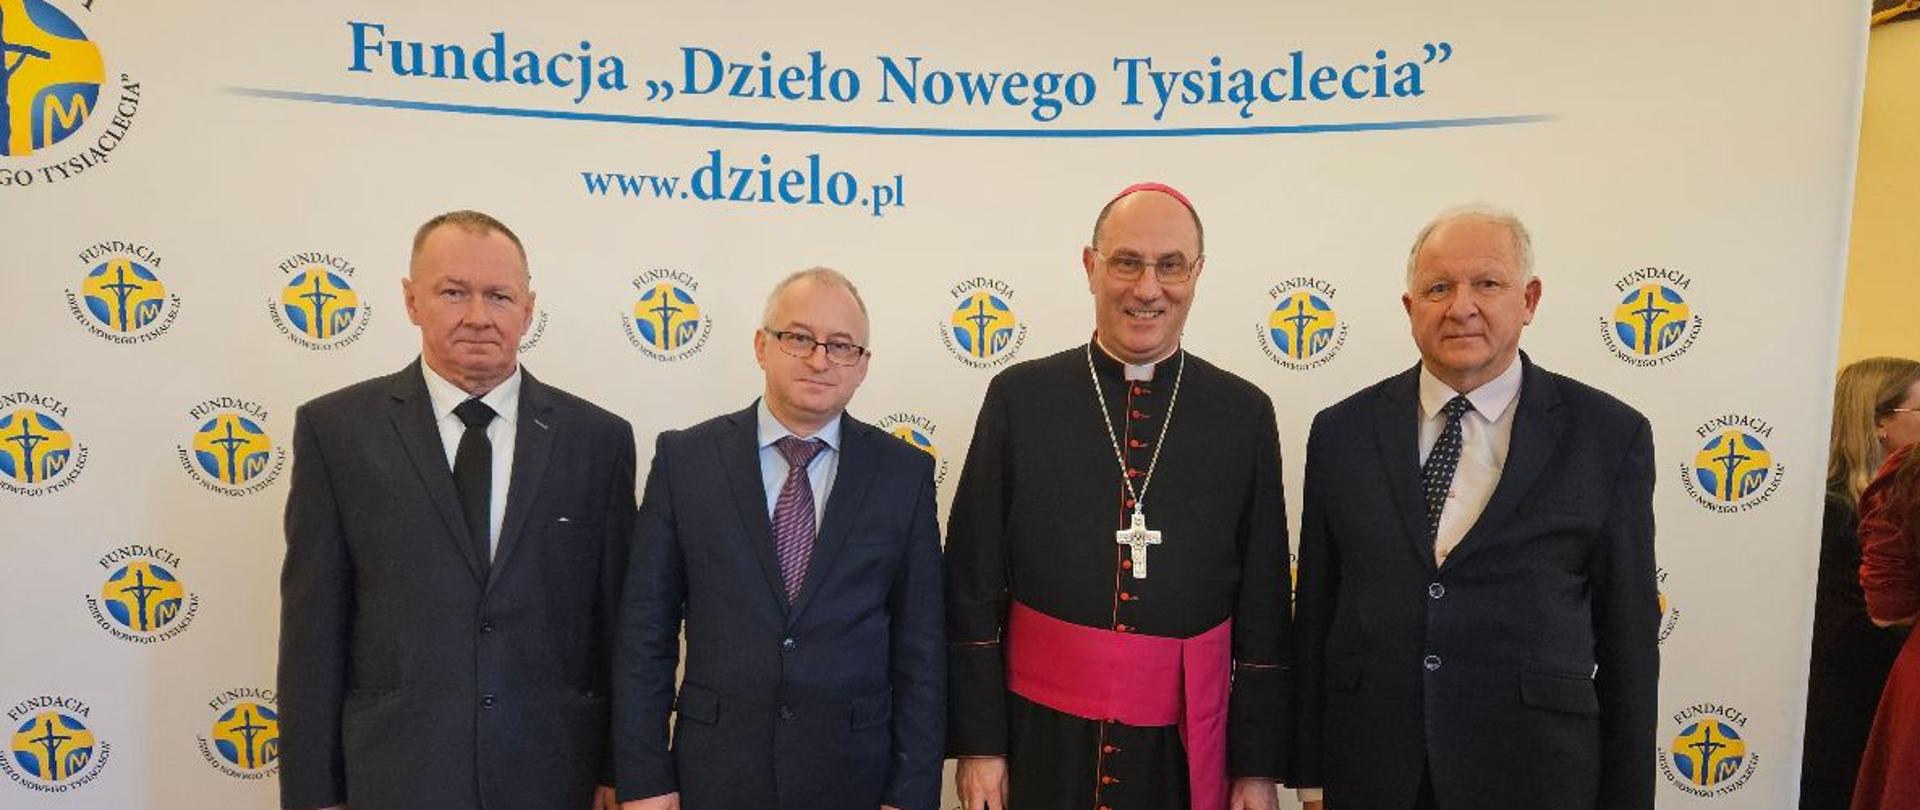 Trzech mężczyzn elegancko ubranych, stoi obok siebie uśmiechając się do zdjęcia. Po środku nich stoi kardynał Kazimierz Nycz. W tle widać baner Fundacji "Dzieło Nowego Tysiąclecia"